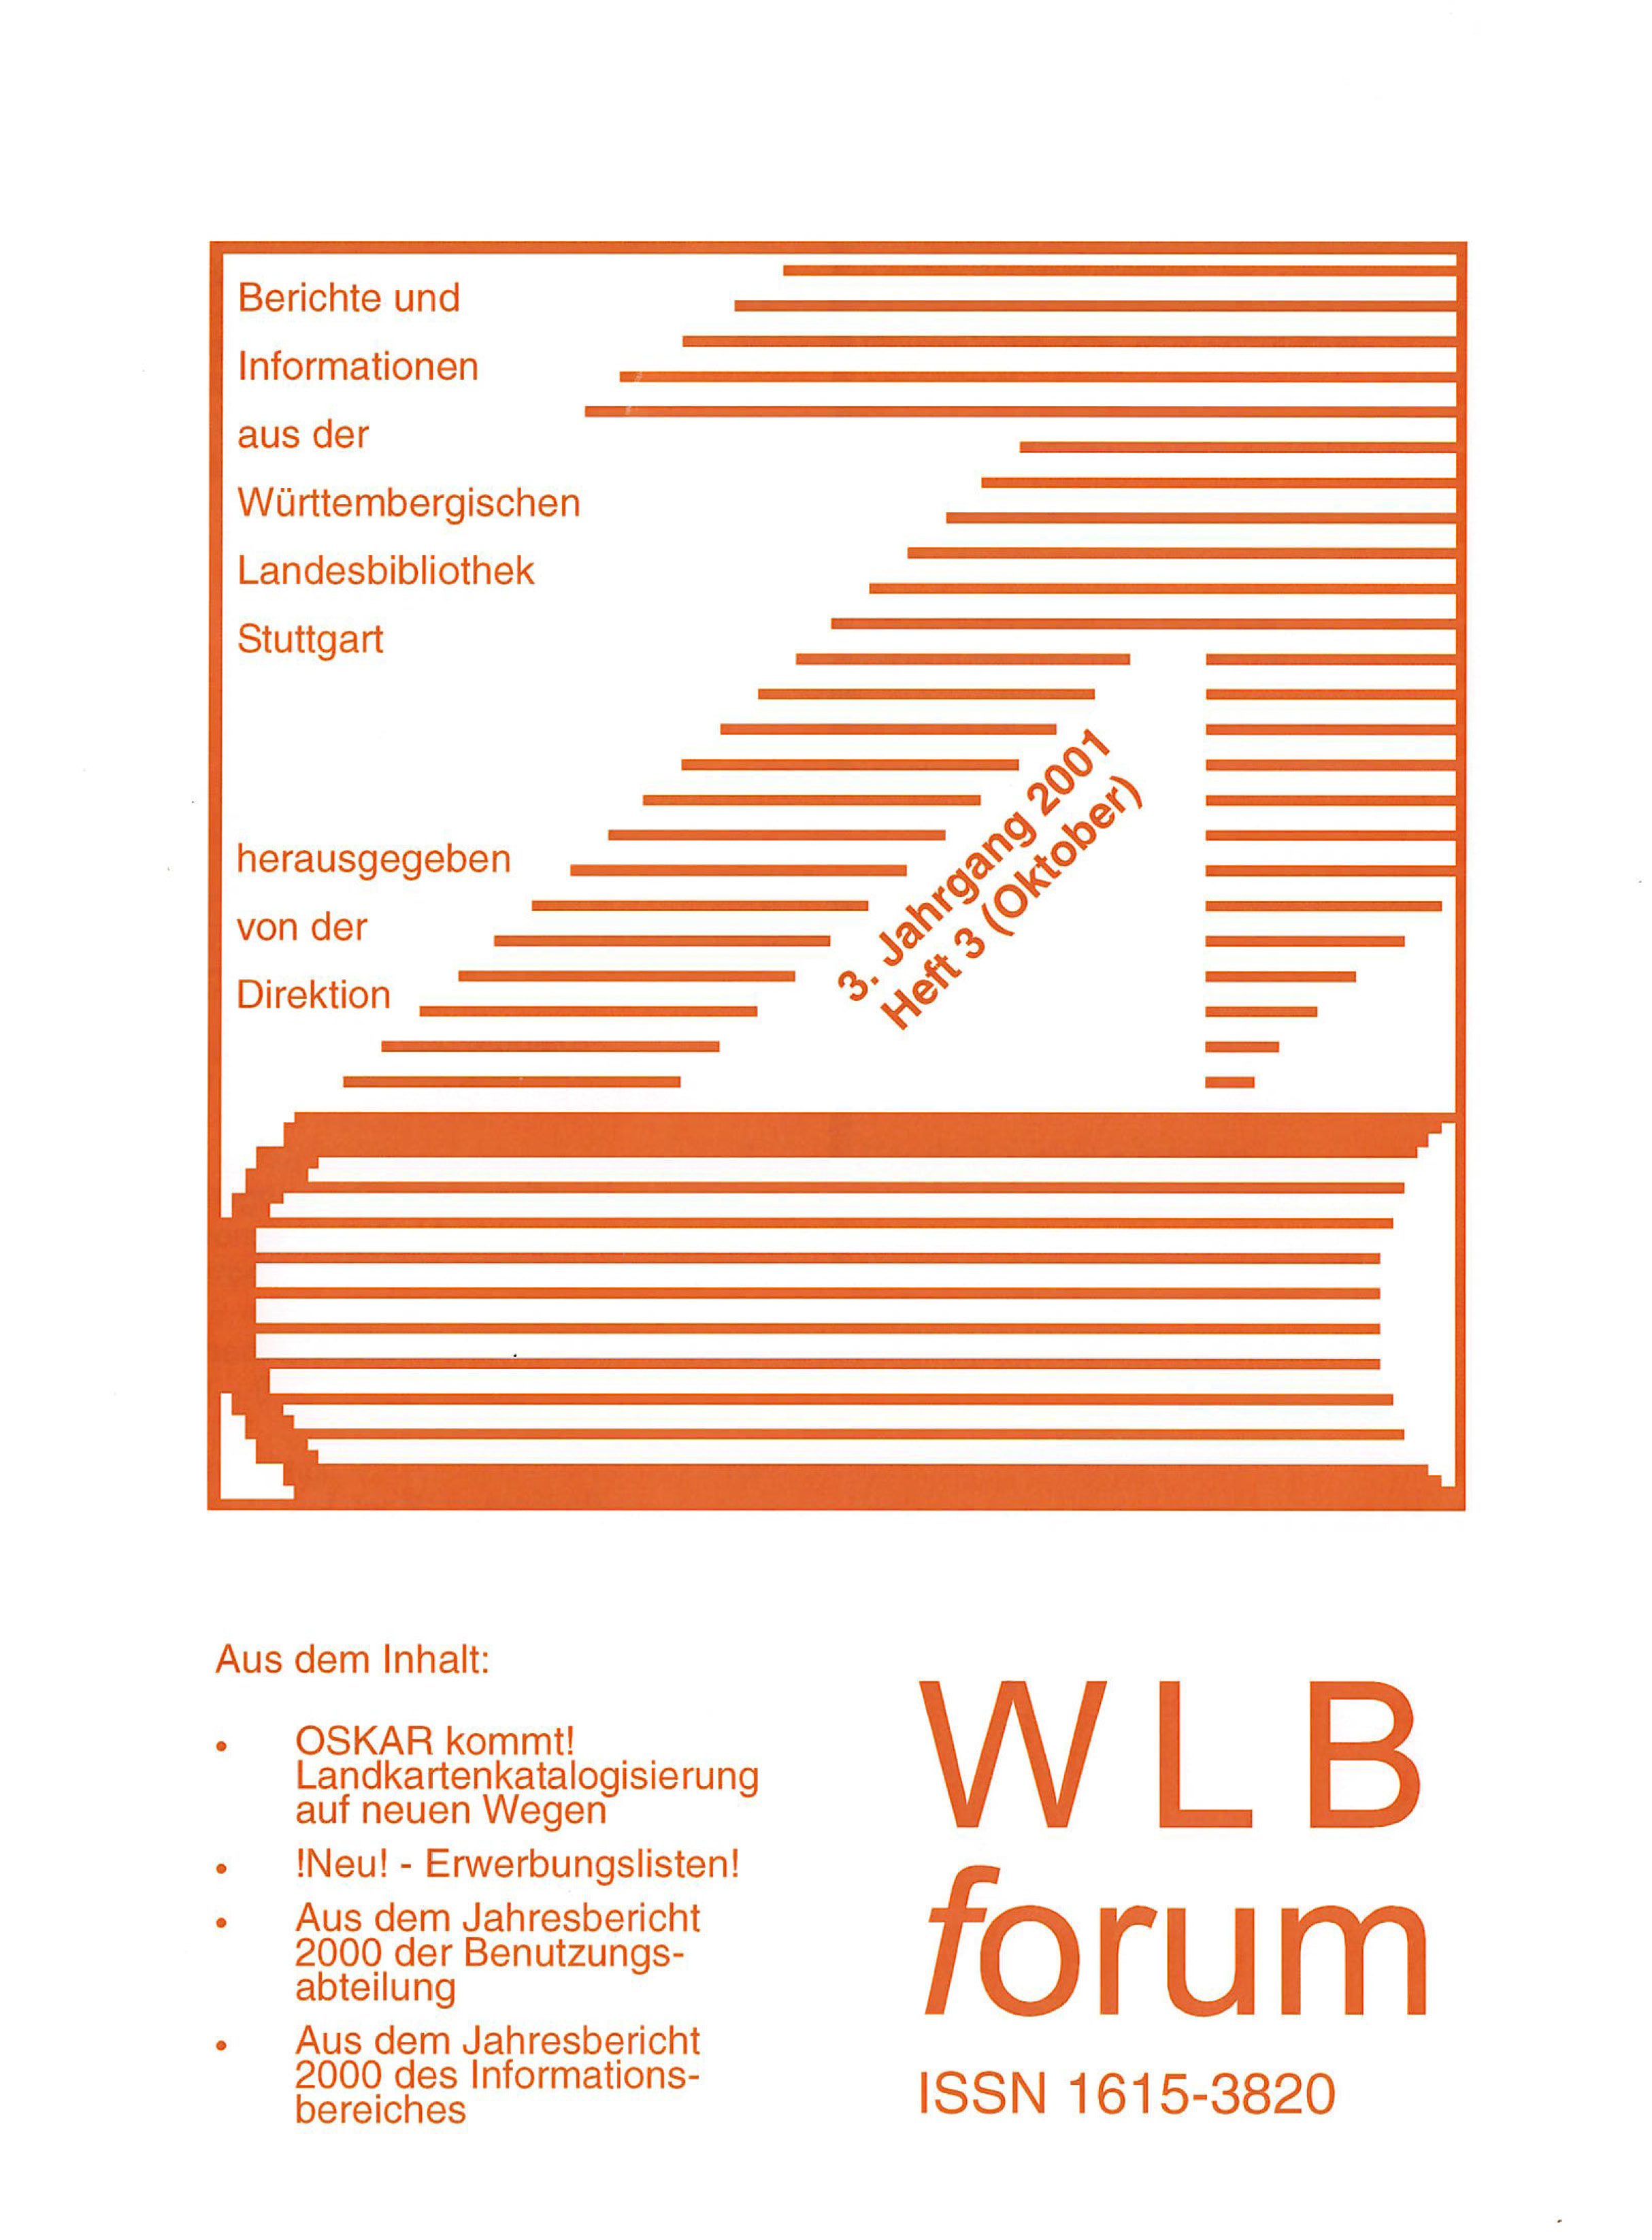                     Ansehen Bd. 3 Nr. 3 (2001): WLBforum
                